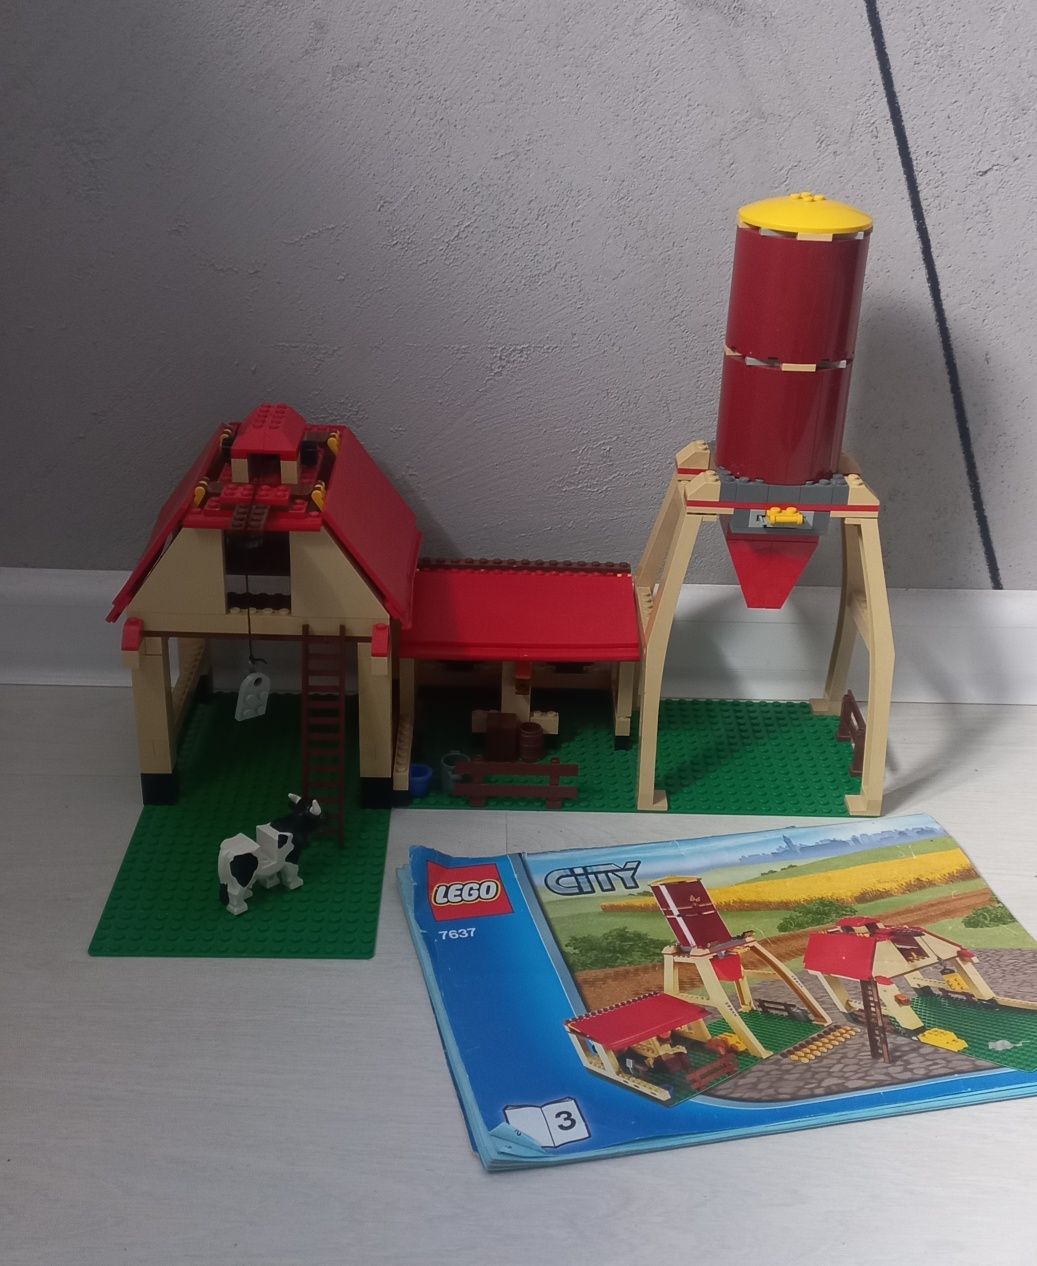 LEGO CITY Farma 7637